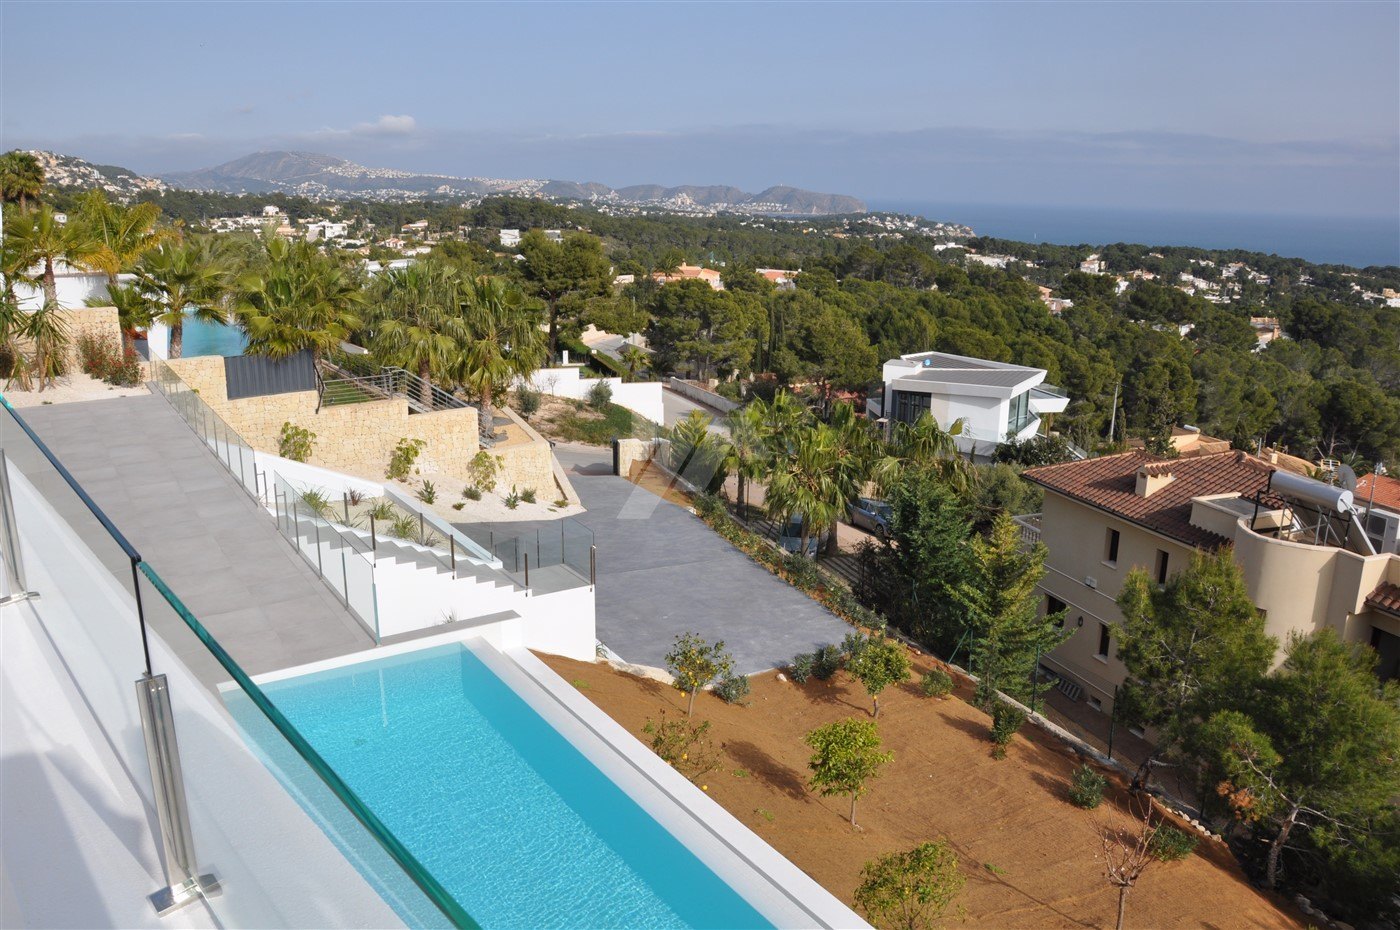 Villa de vue sur la mer de luxe à vendre à Benissa, Costa Blanca.